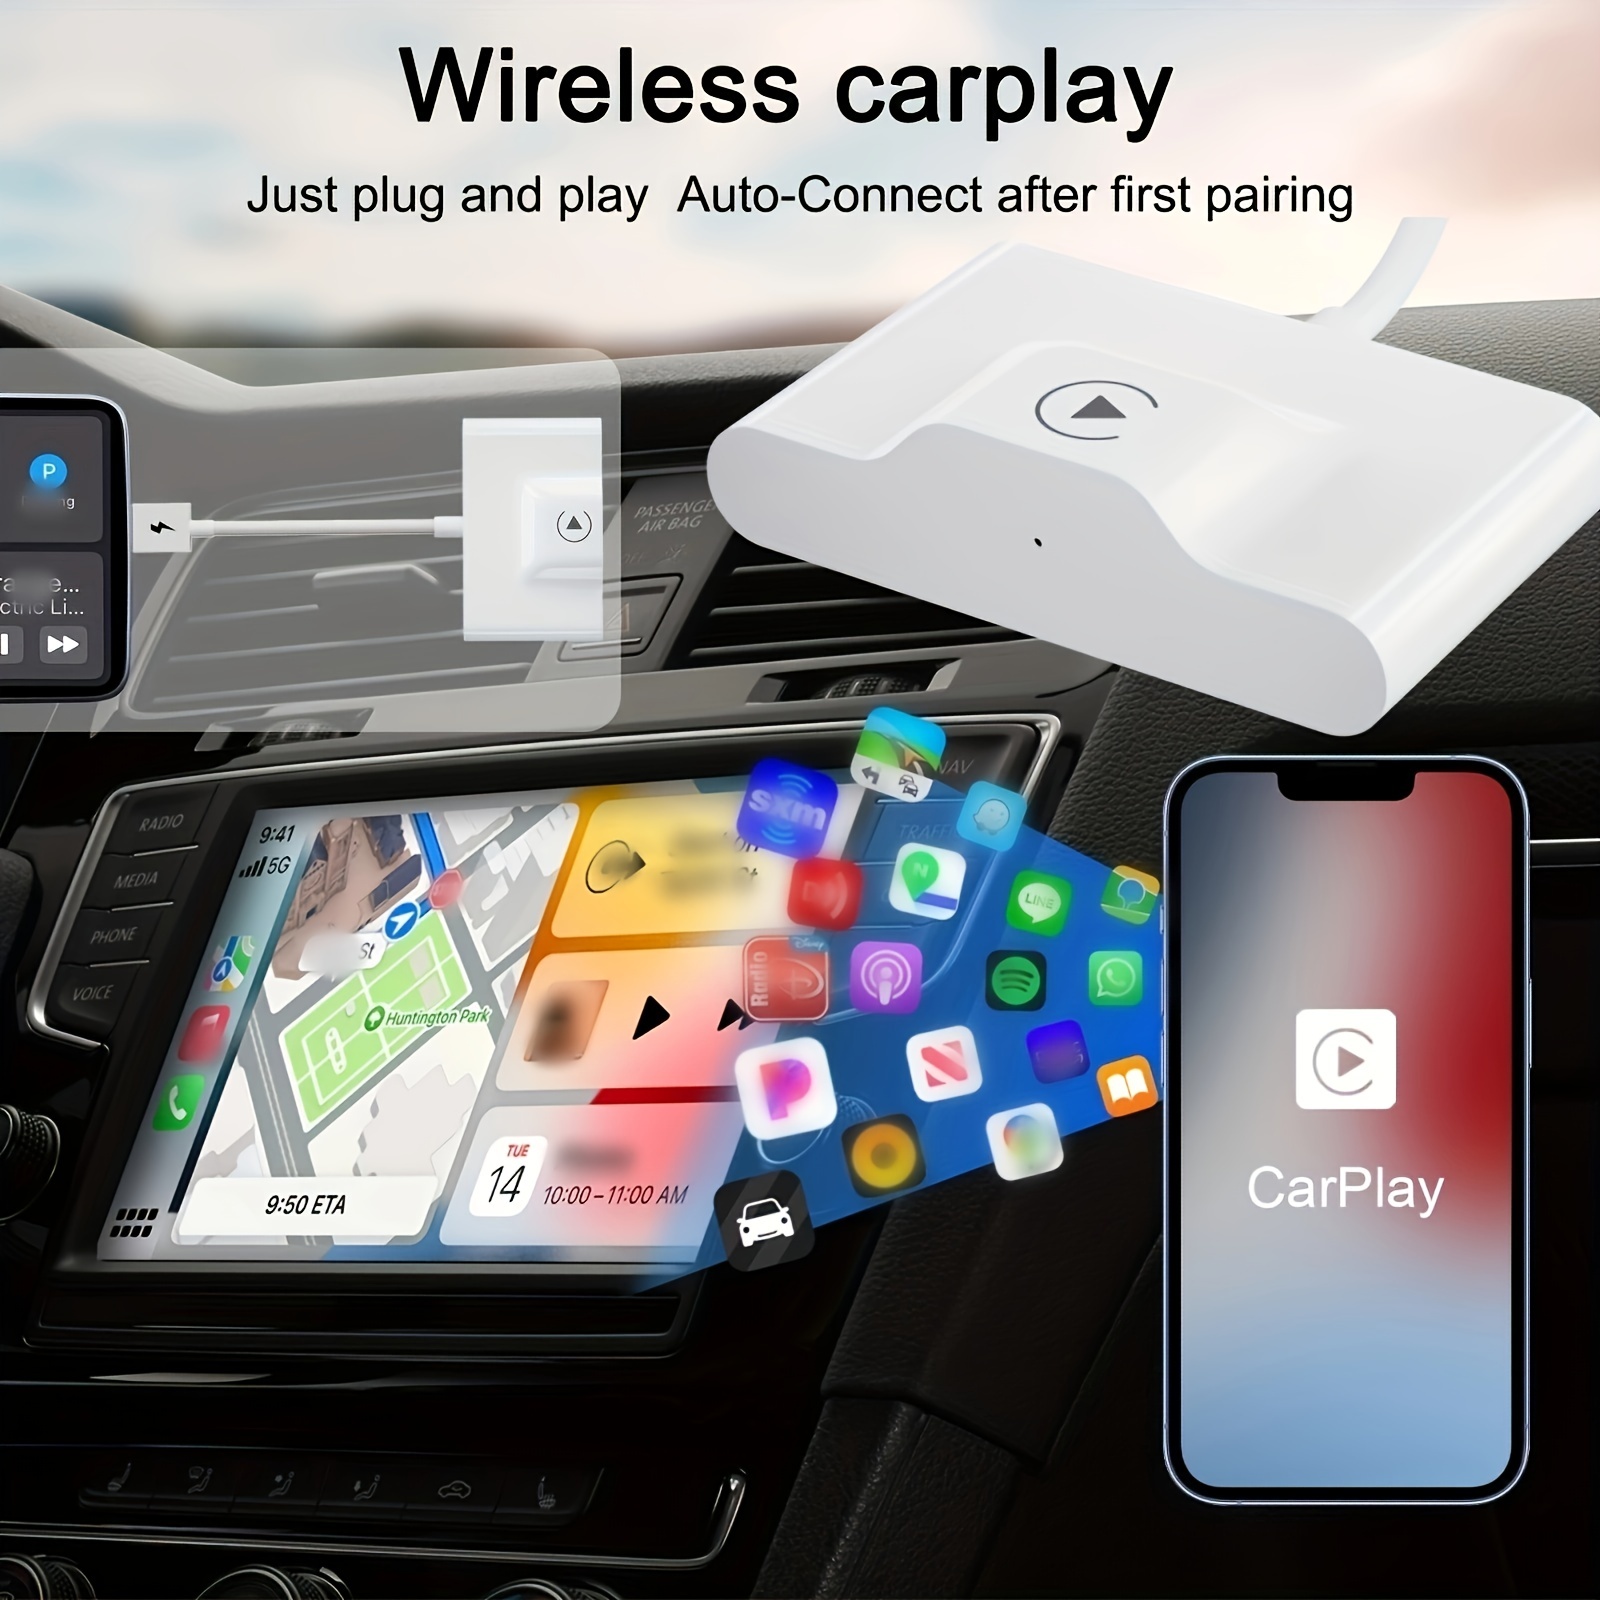 Adaptateur CarPlay sans Fil pour iPhone - Équipement auto